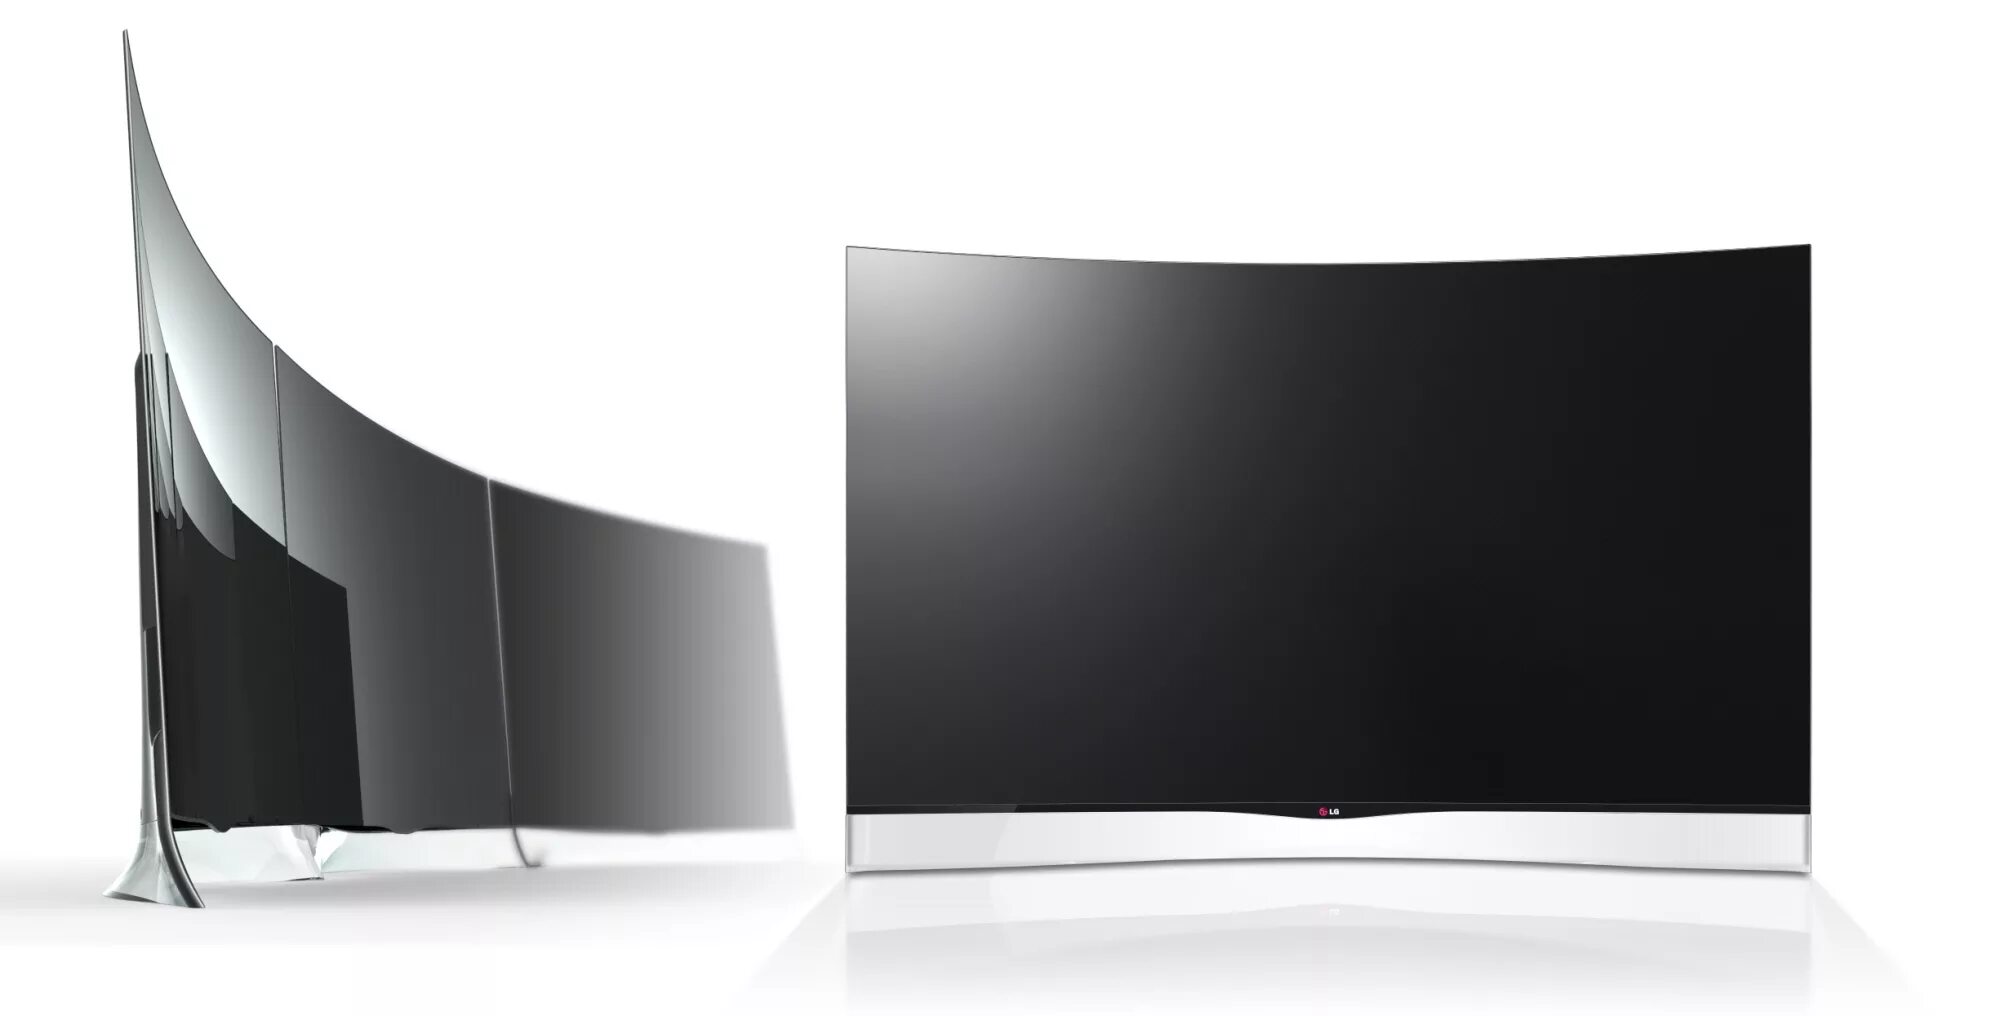 Телевизор LG изогнутый экран. Телевизор LG OLED 55 изогнутый. Телевизор самсунг изогнутый экран. LG 55uk7500plc.